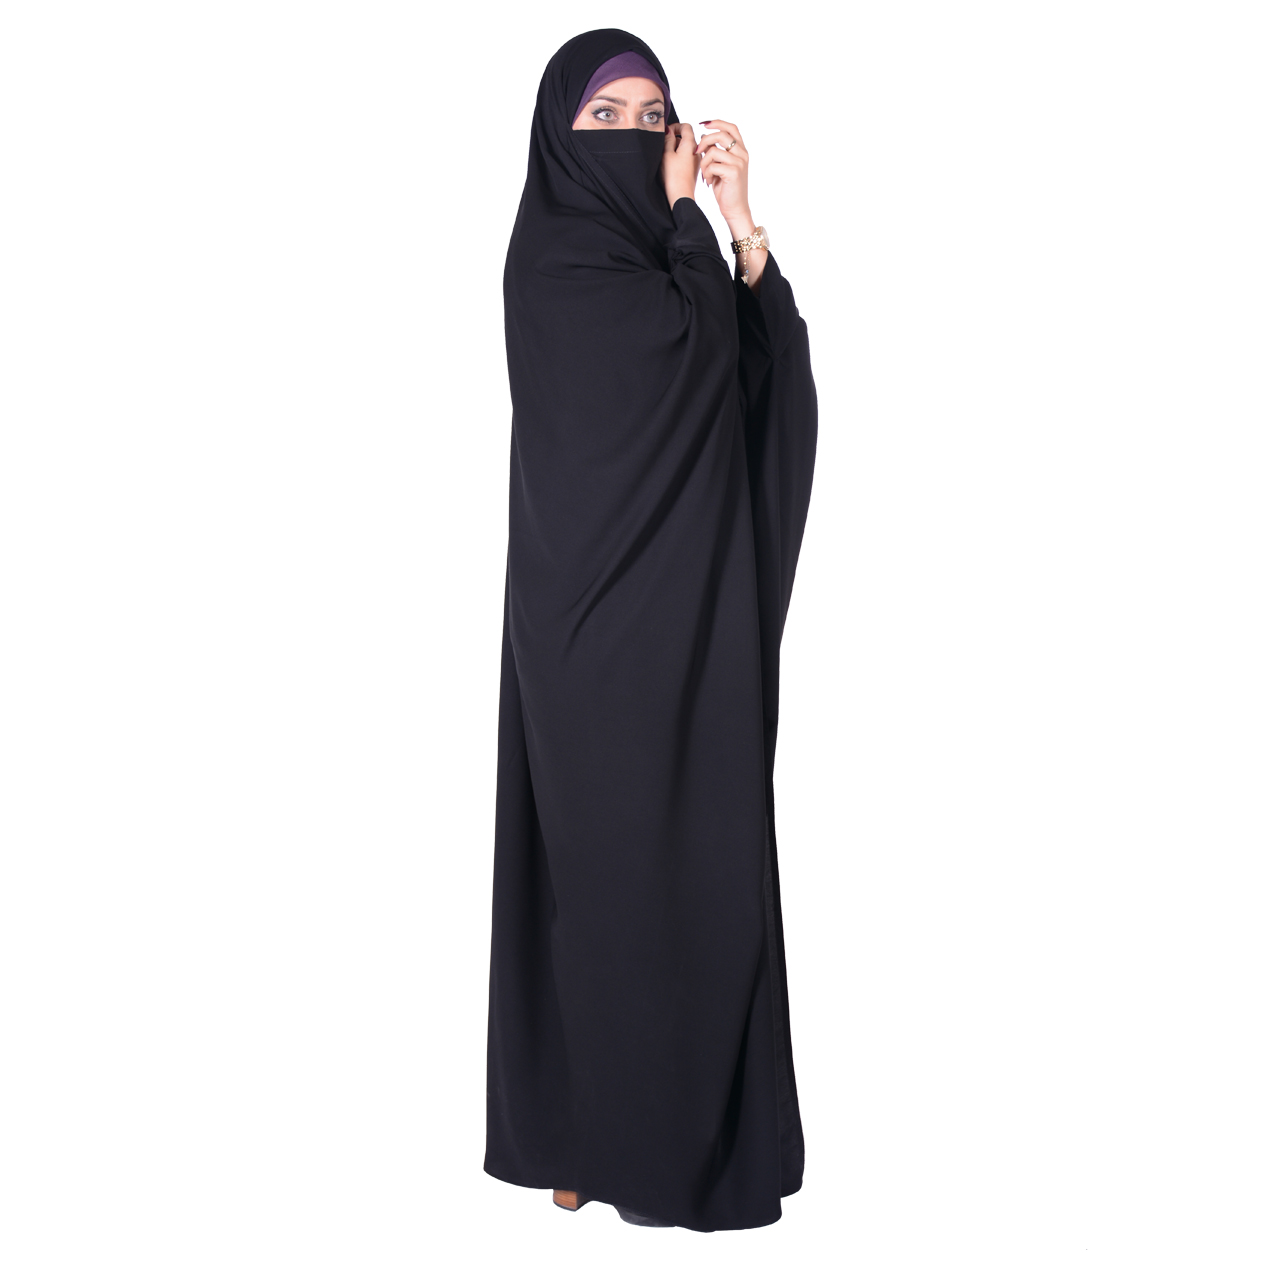 نکته خرید - قیمت روز چادر بحرینی شهر حجاب مدل کرپ ناز ایرانی VIP خرید